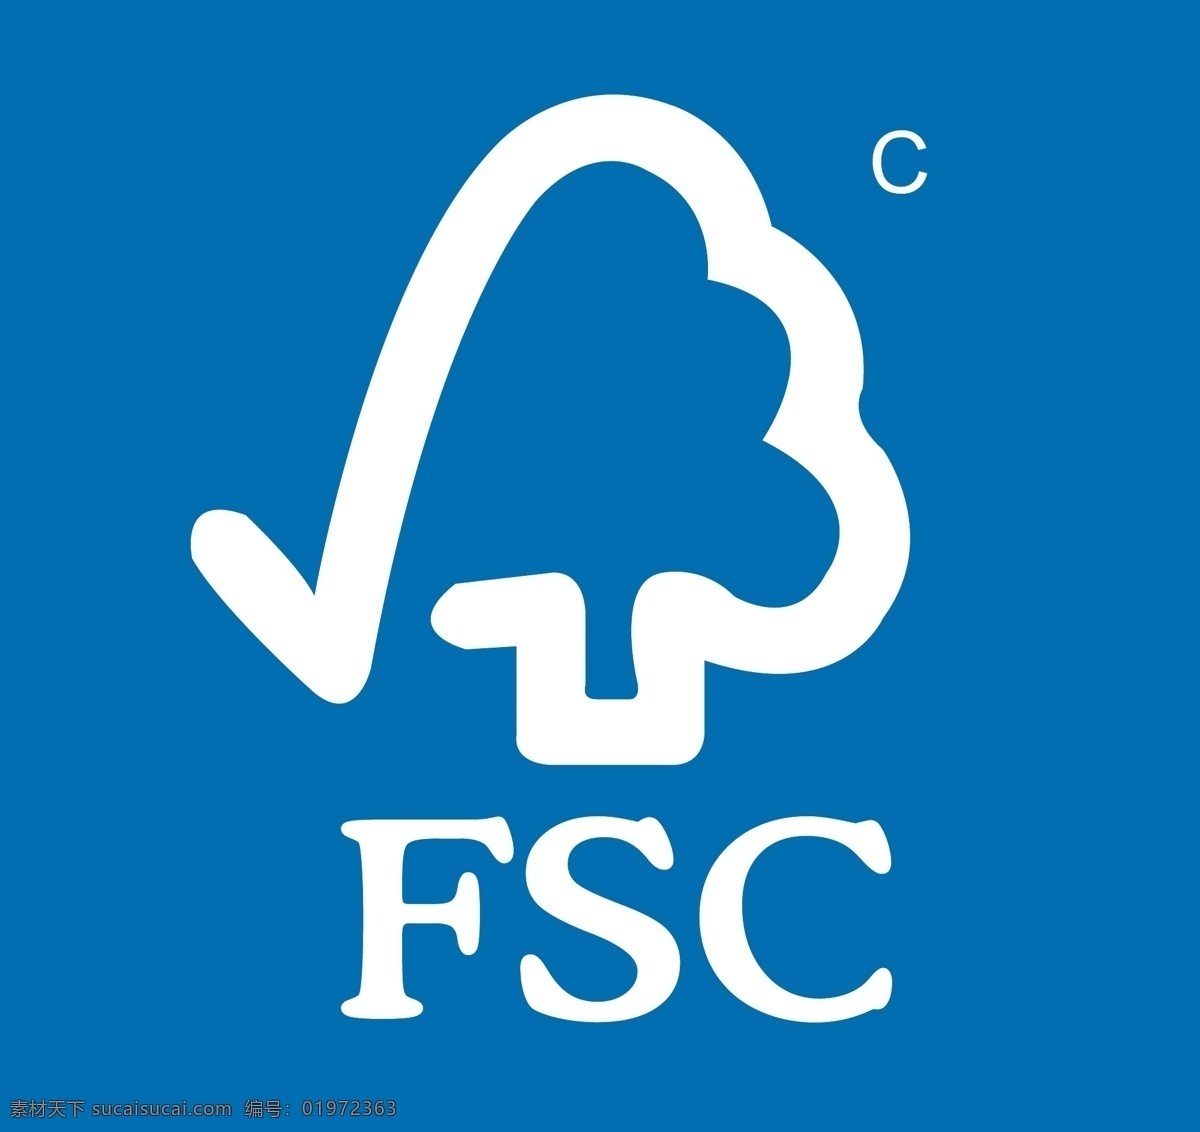 fsc 标记 logo 认证 环保 矢量素材 其他矢量 矢量